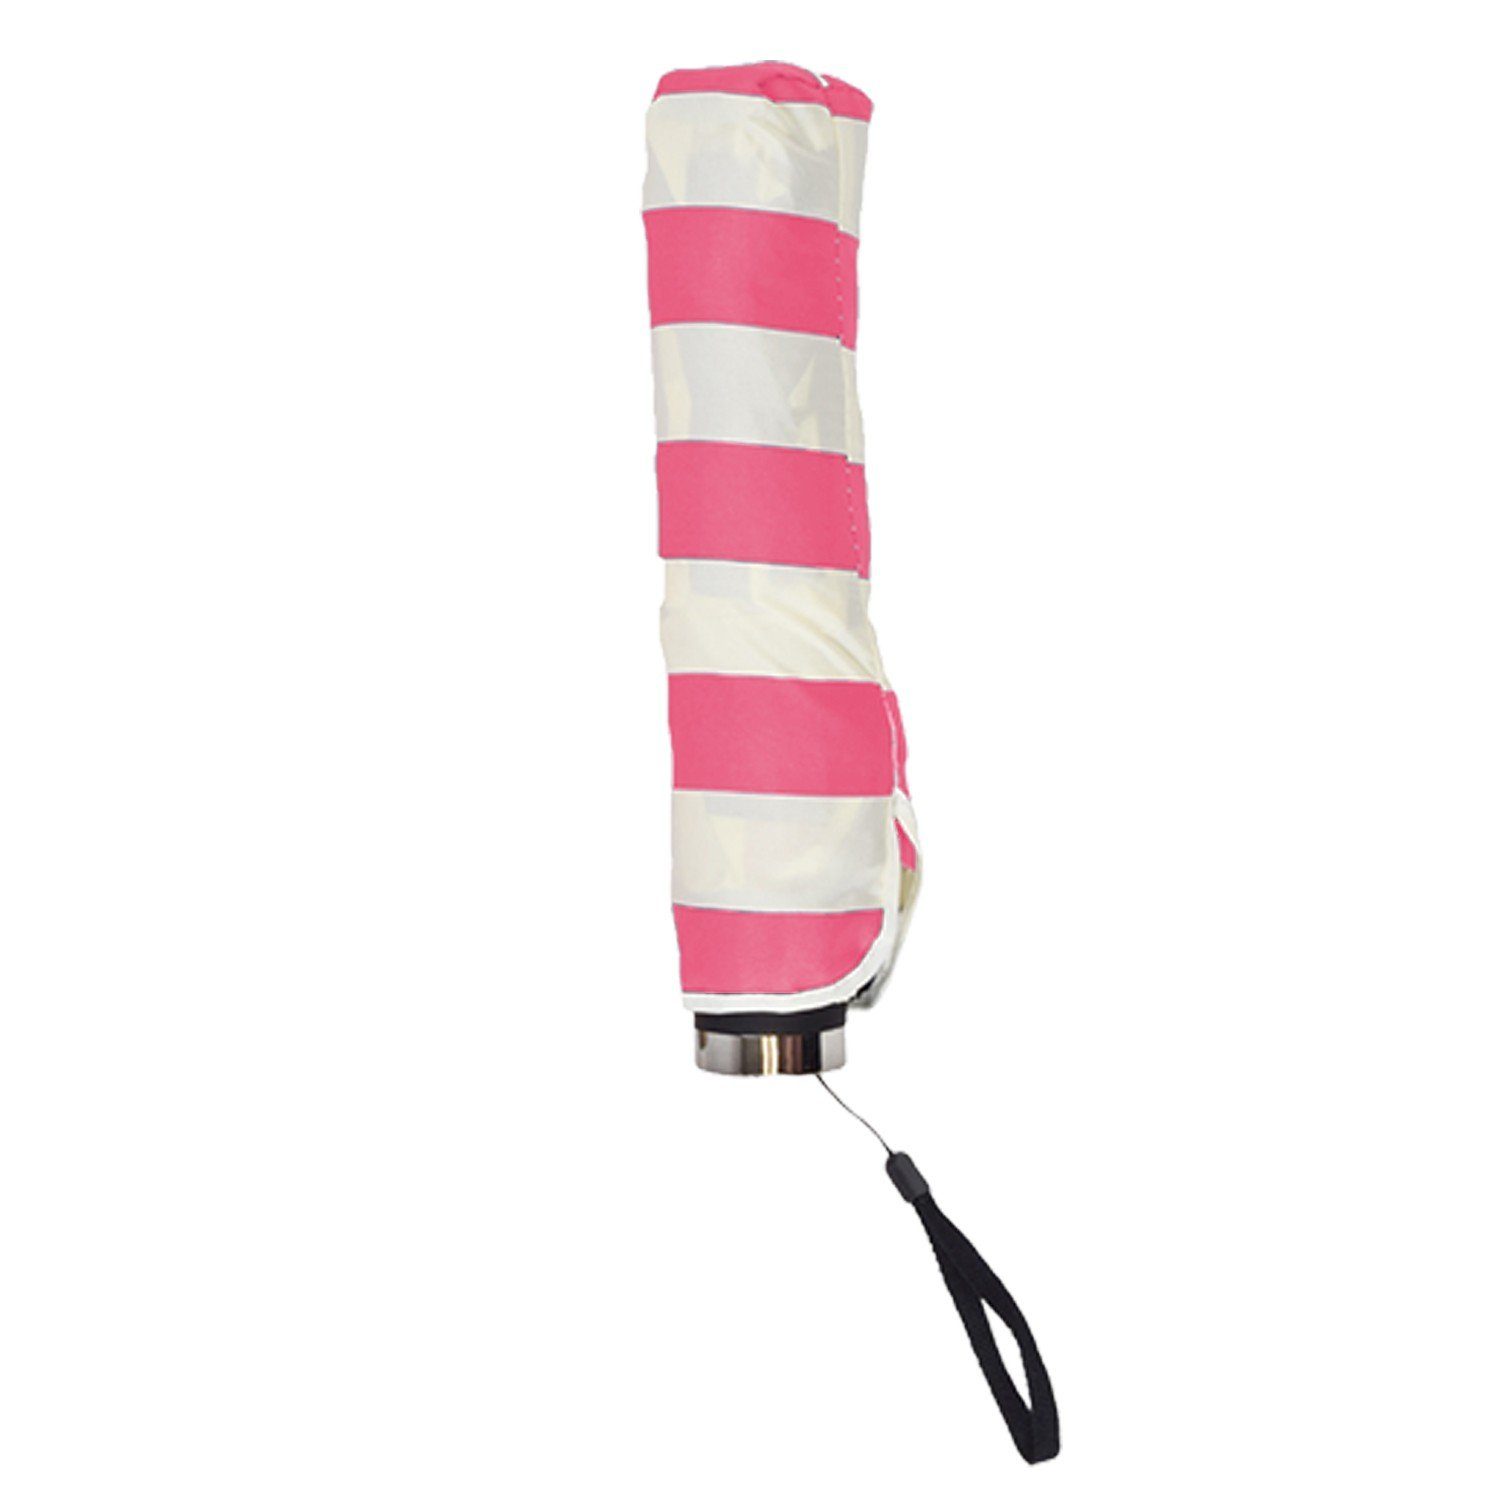 Taschenregenschirm Sonia Originelli Streifen Schutz rosa Taschenschirm Anker "Maritim"